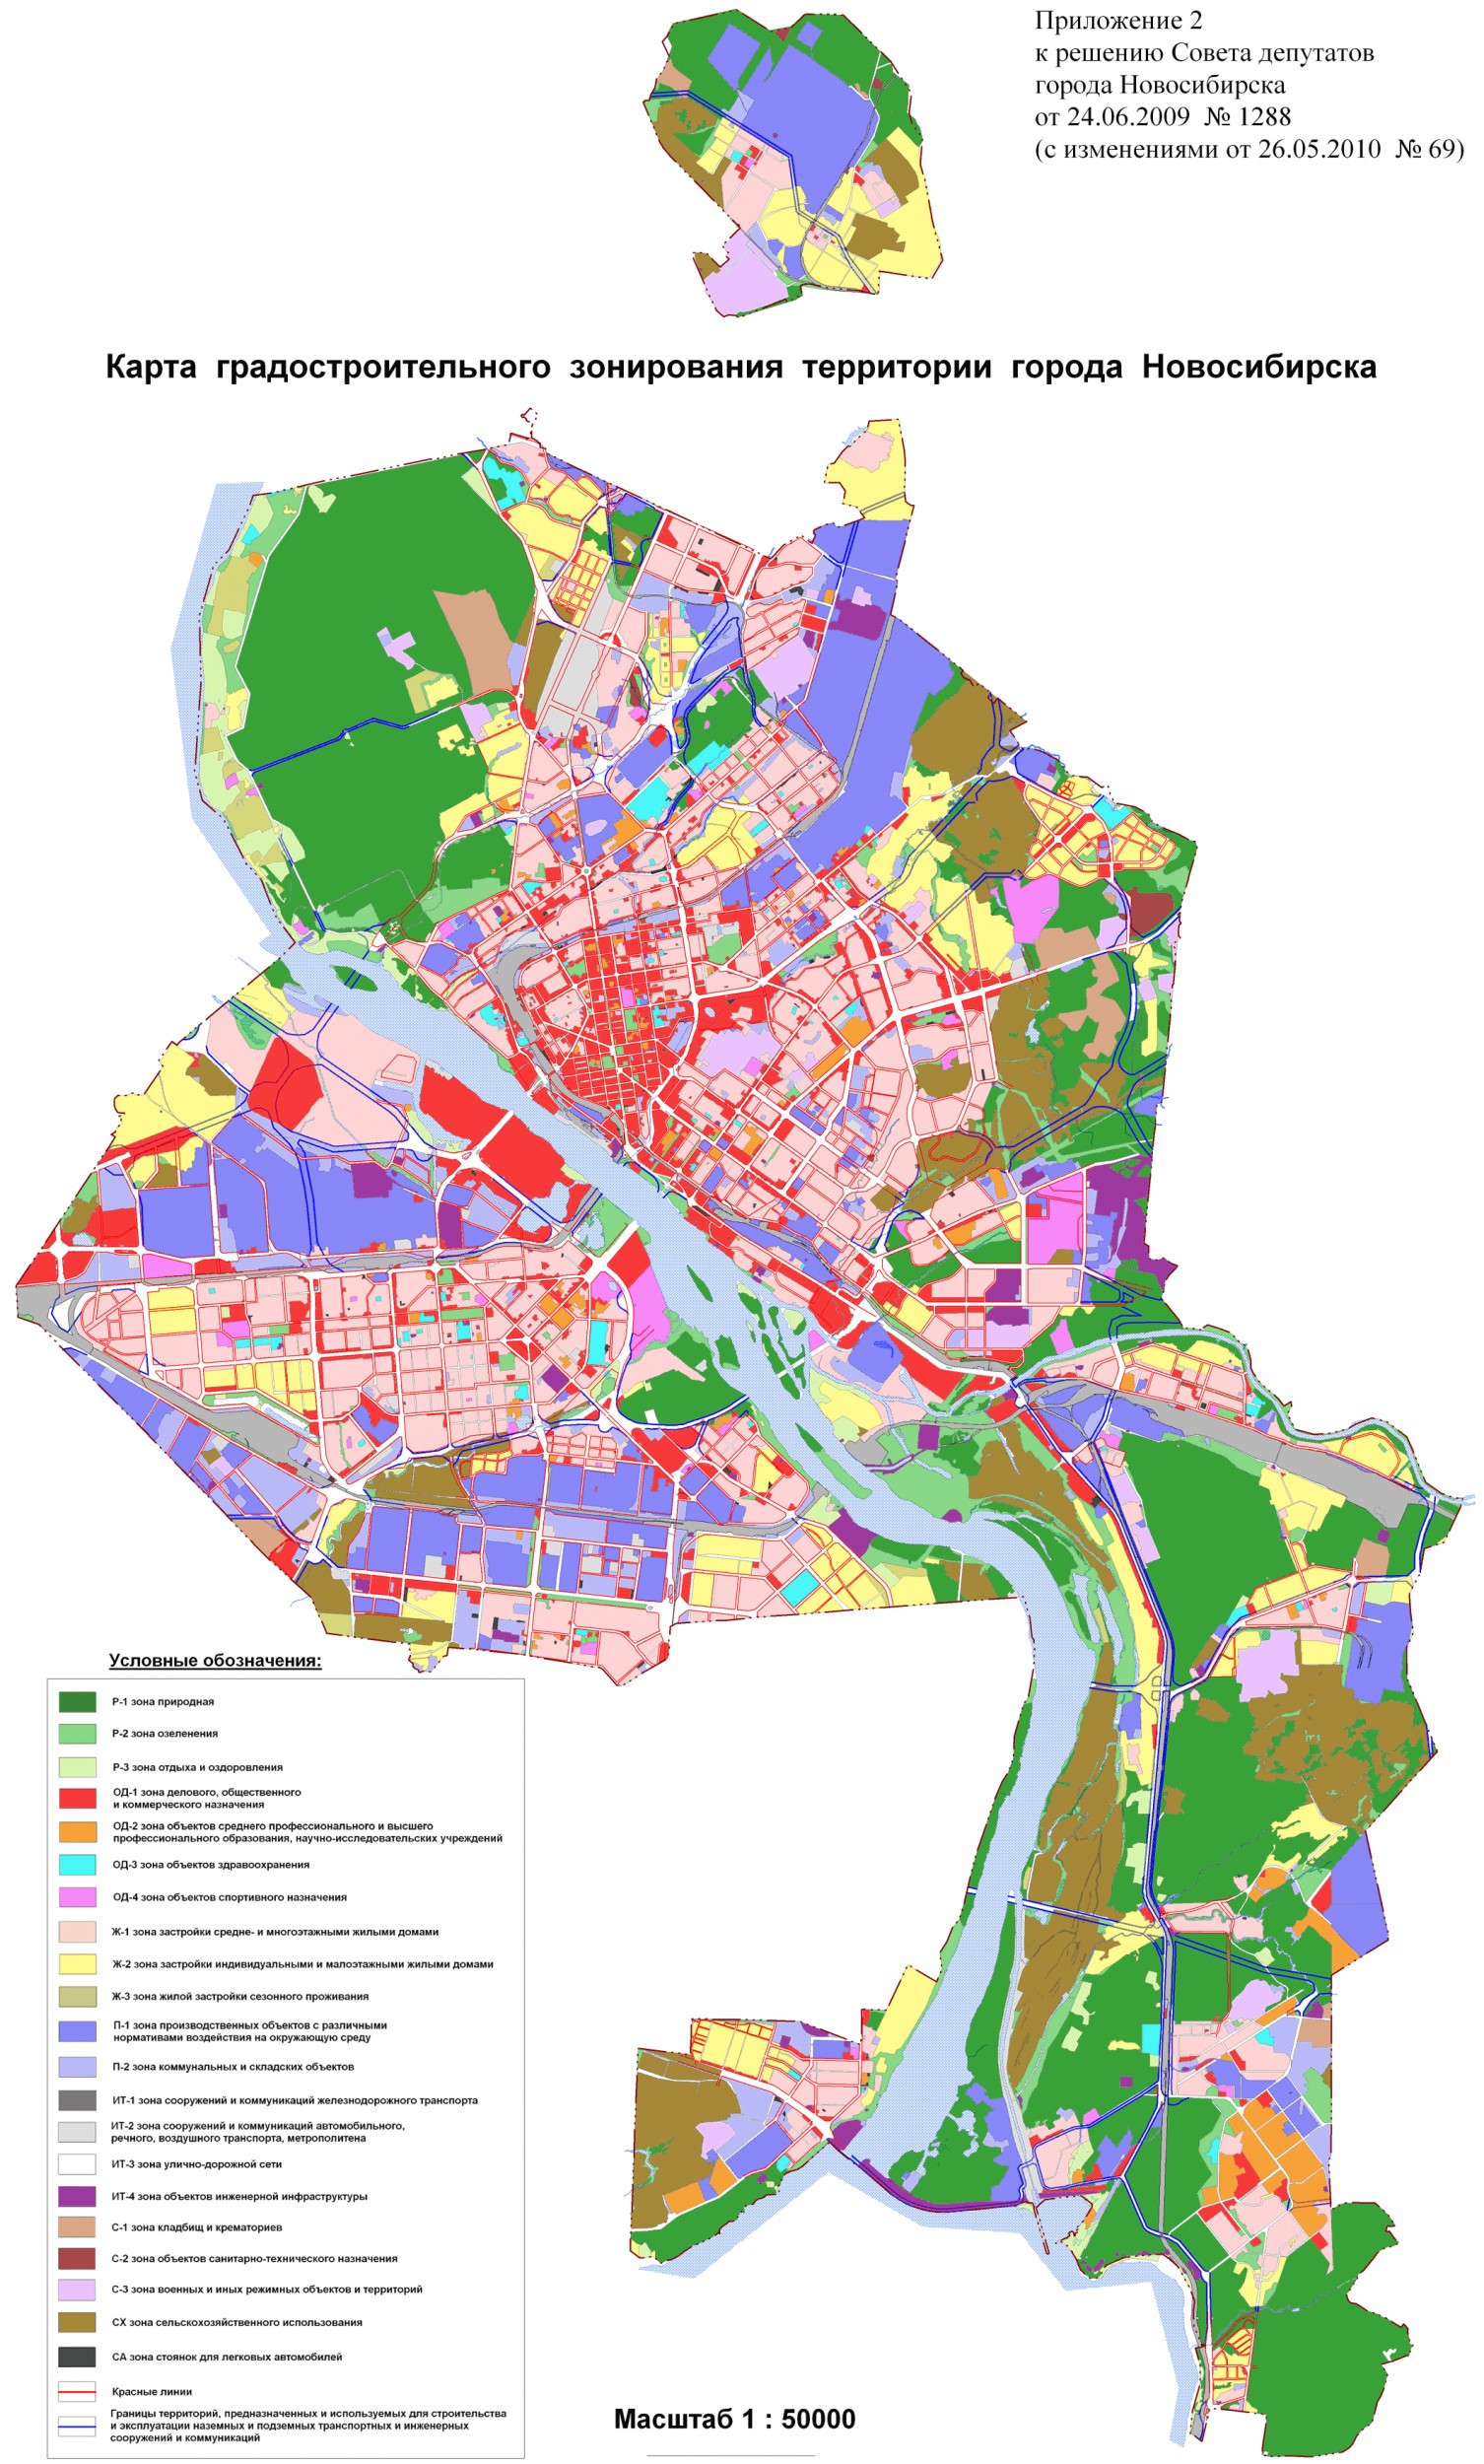 Карты - схемы Правил землепользования и застройки города Новосибирска -ДСиА мэрии г. Новосибирска